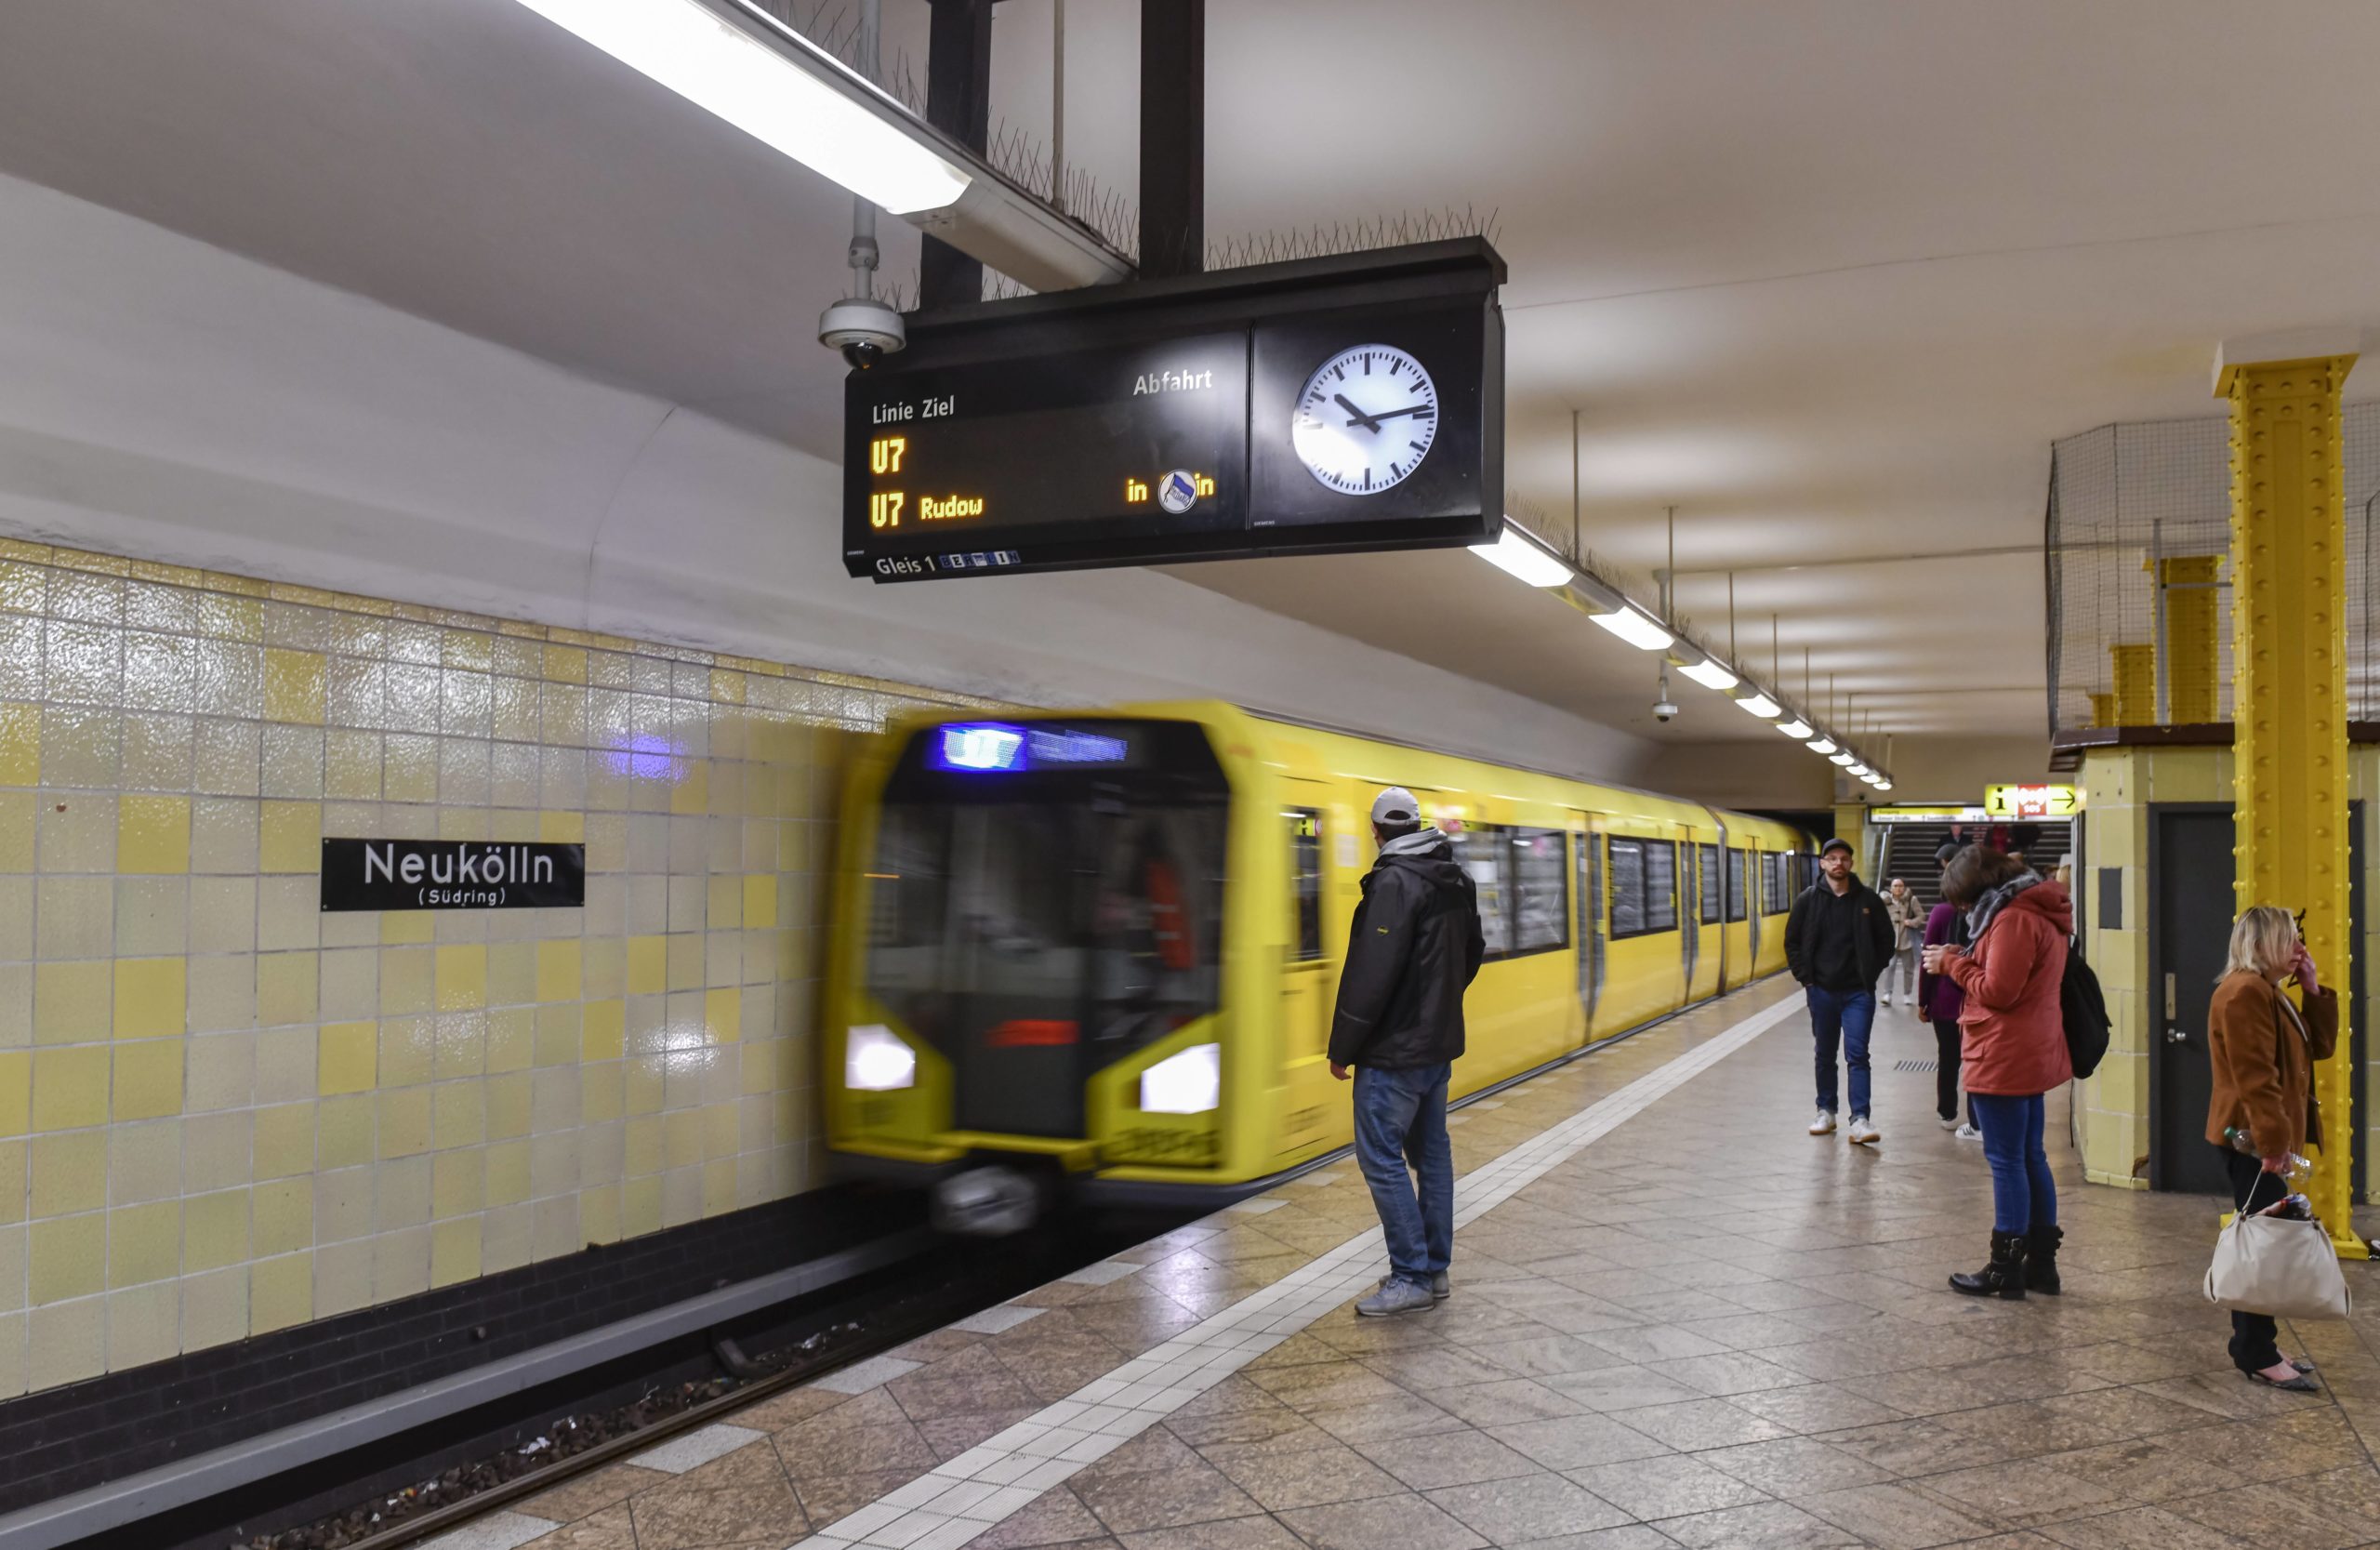 Die Bezeichnung "Südring" verrät es schon: Hier geht’s von der U7 zur S-Bahn. Foto: Imago/Schöning